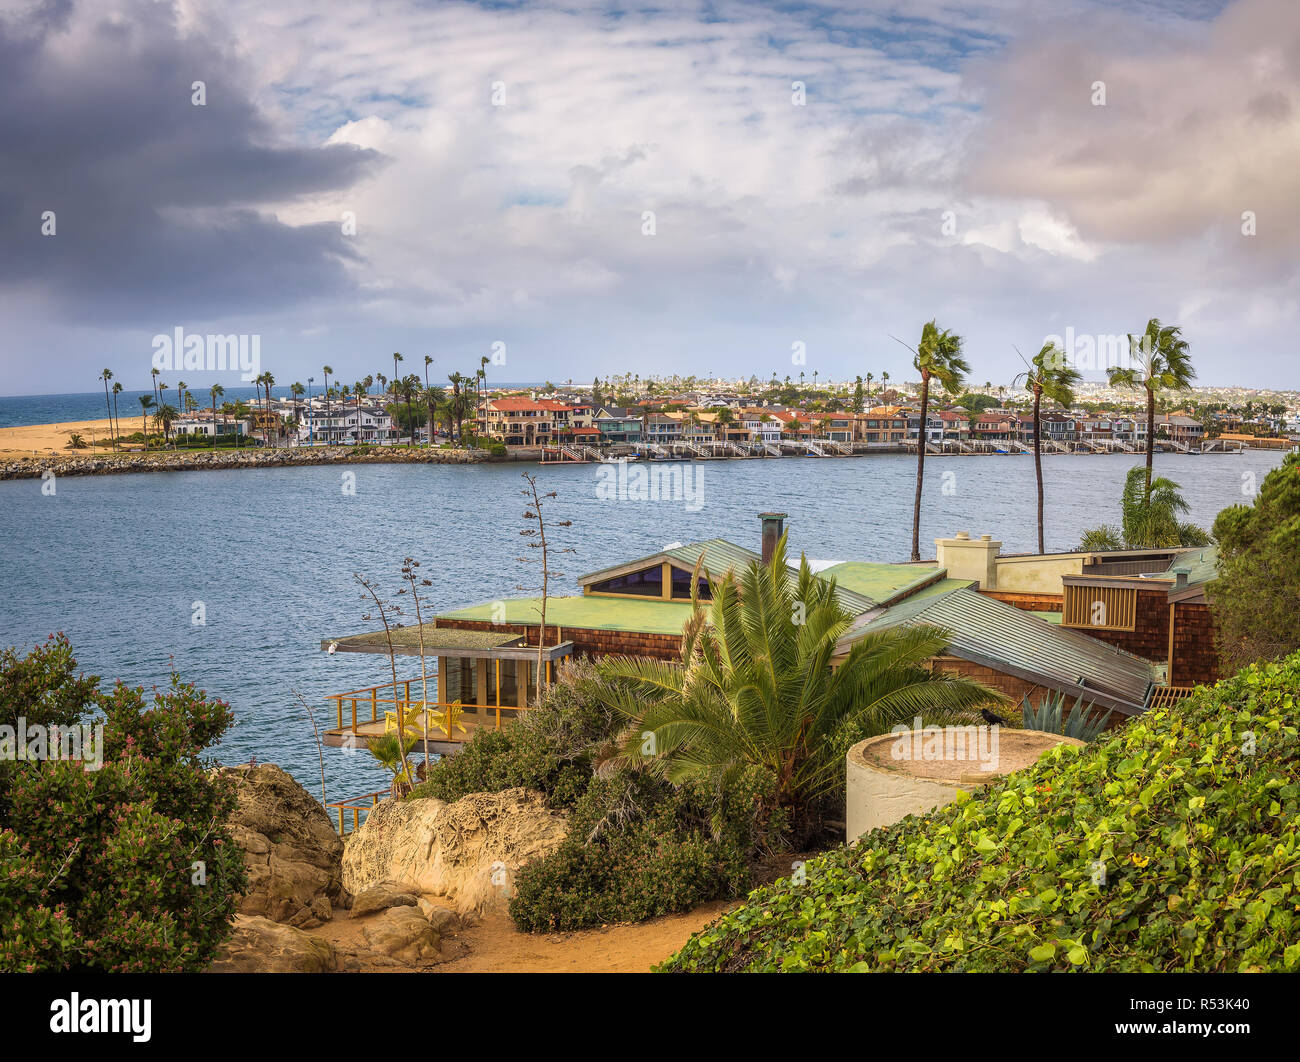 Península de Balboa, visto desde Newport Beach Foto de stock